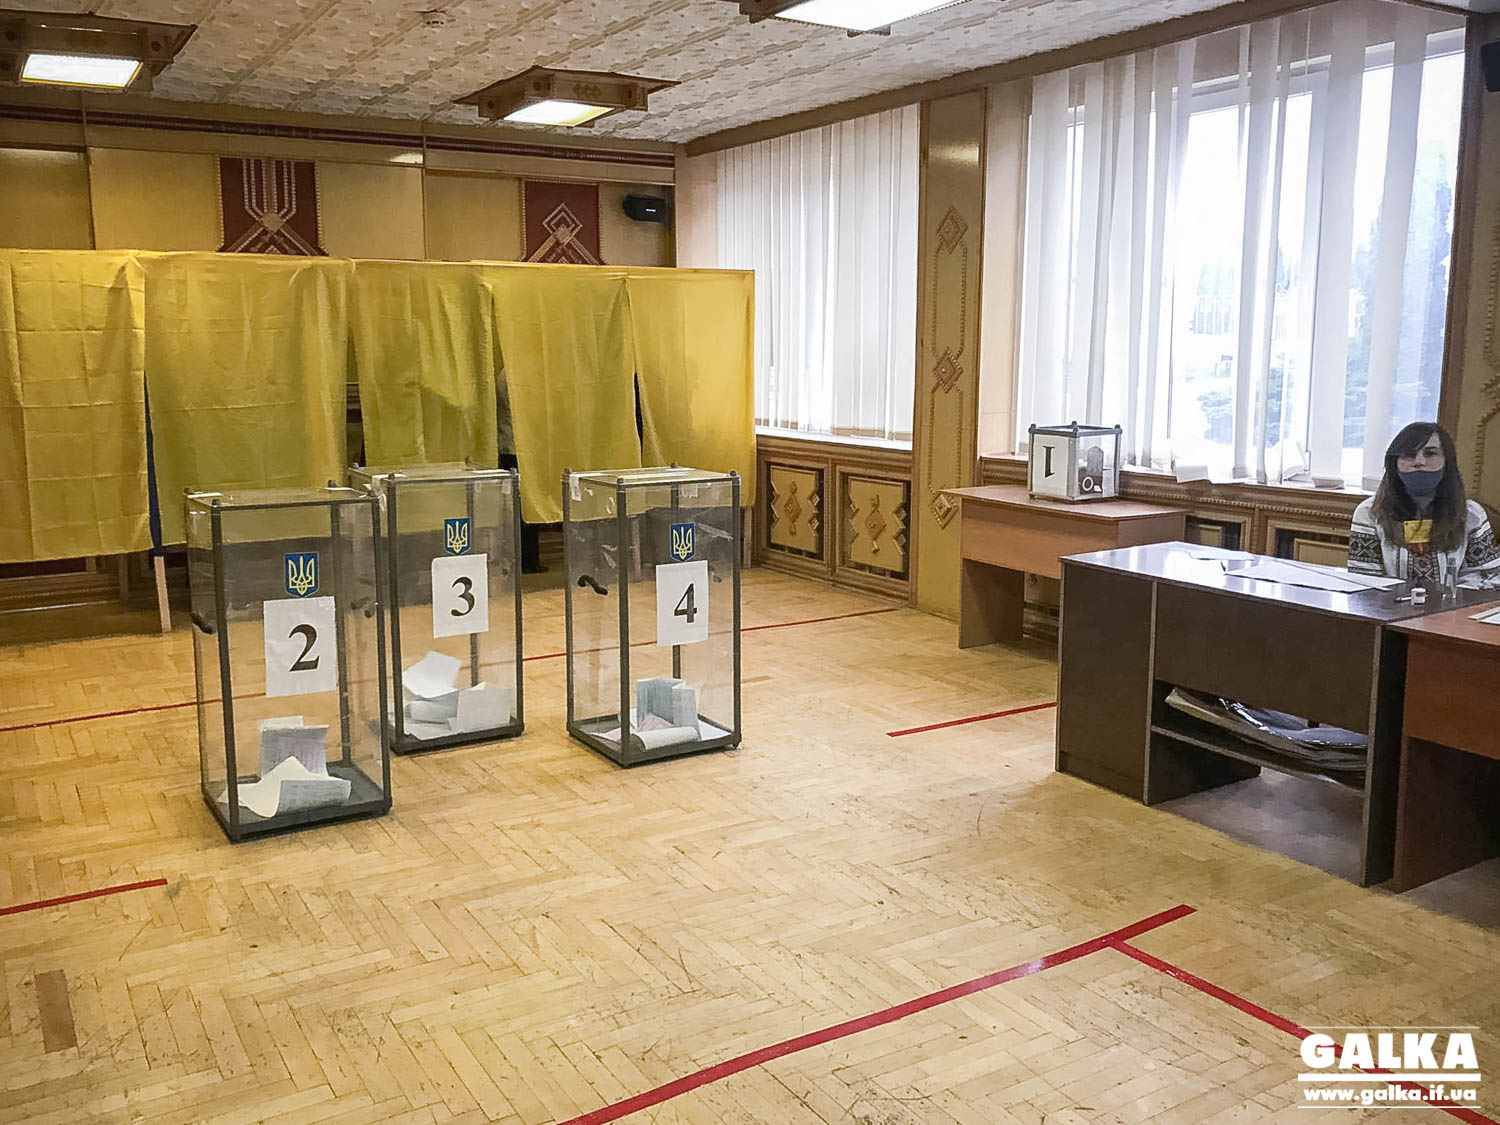 Ранні пташки: як голосують перші франківці на виборчій дільниці в “Теплокомуненерго” (ФОТОРЕПОРТАЖ)